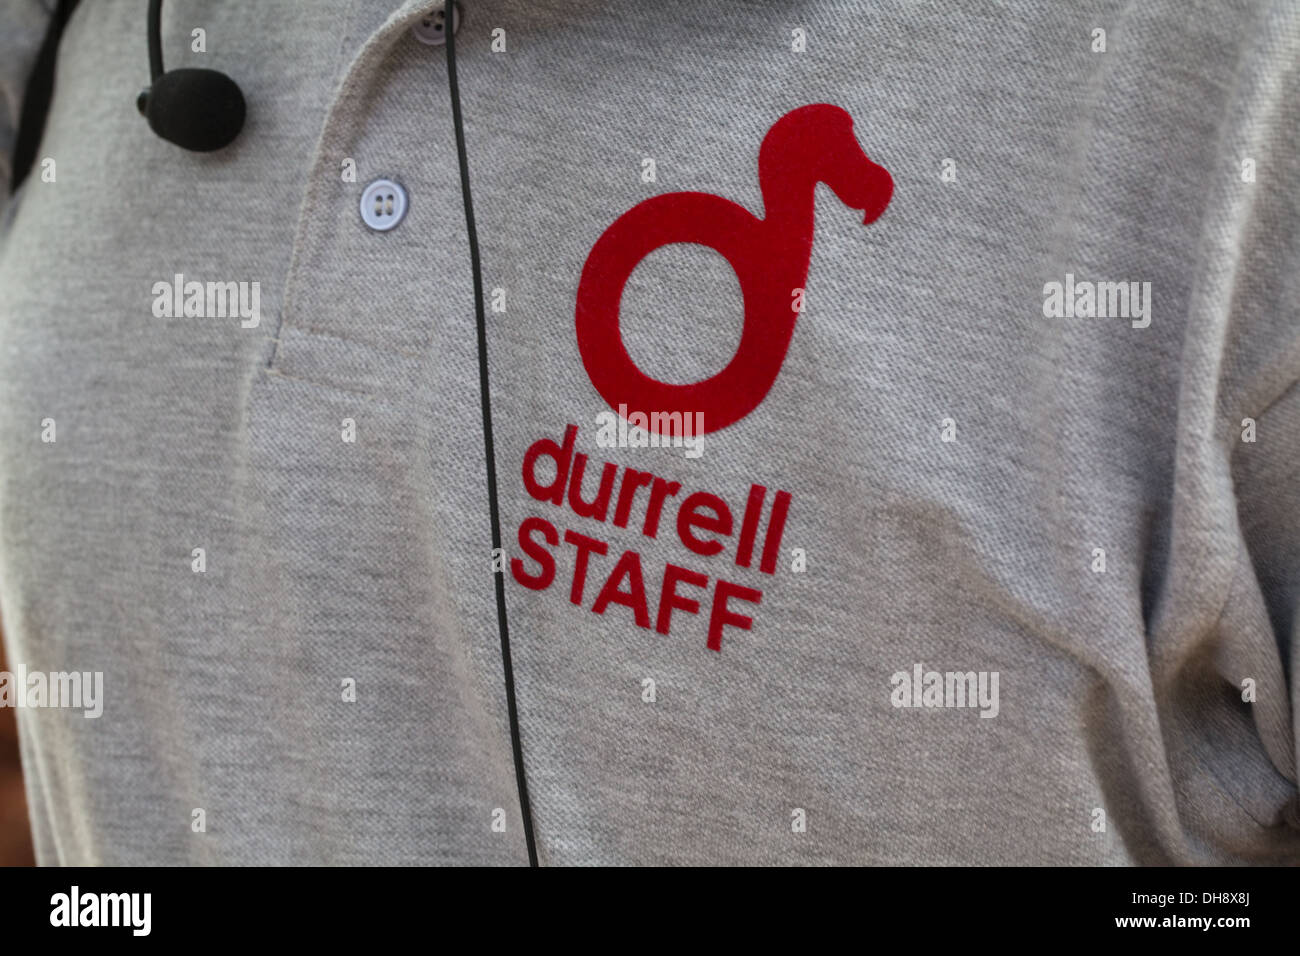 Durrell Wildlife Conservation Trust. Logo design basé sur le dodo. Ici que sur la chemise d'un membre du personnel. Banque D'Images